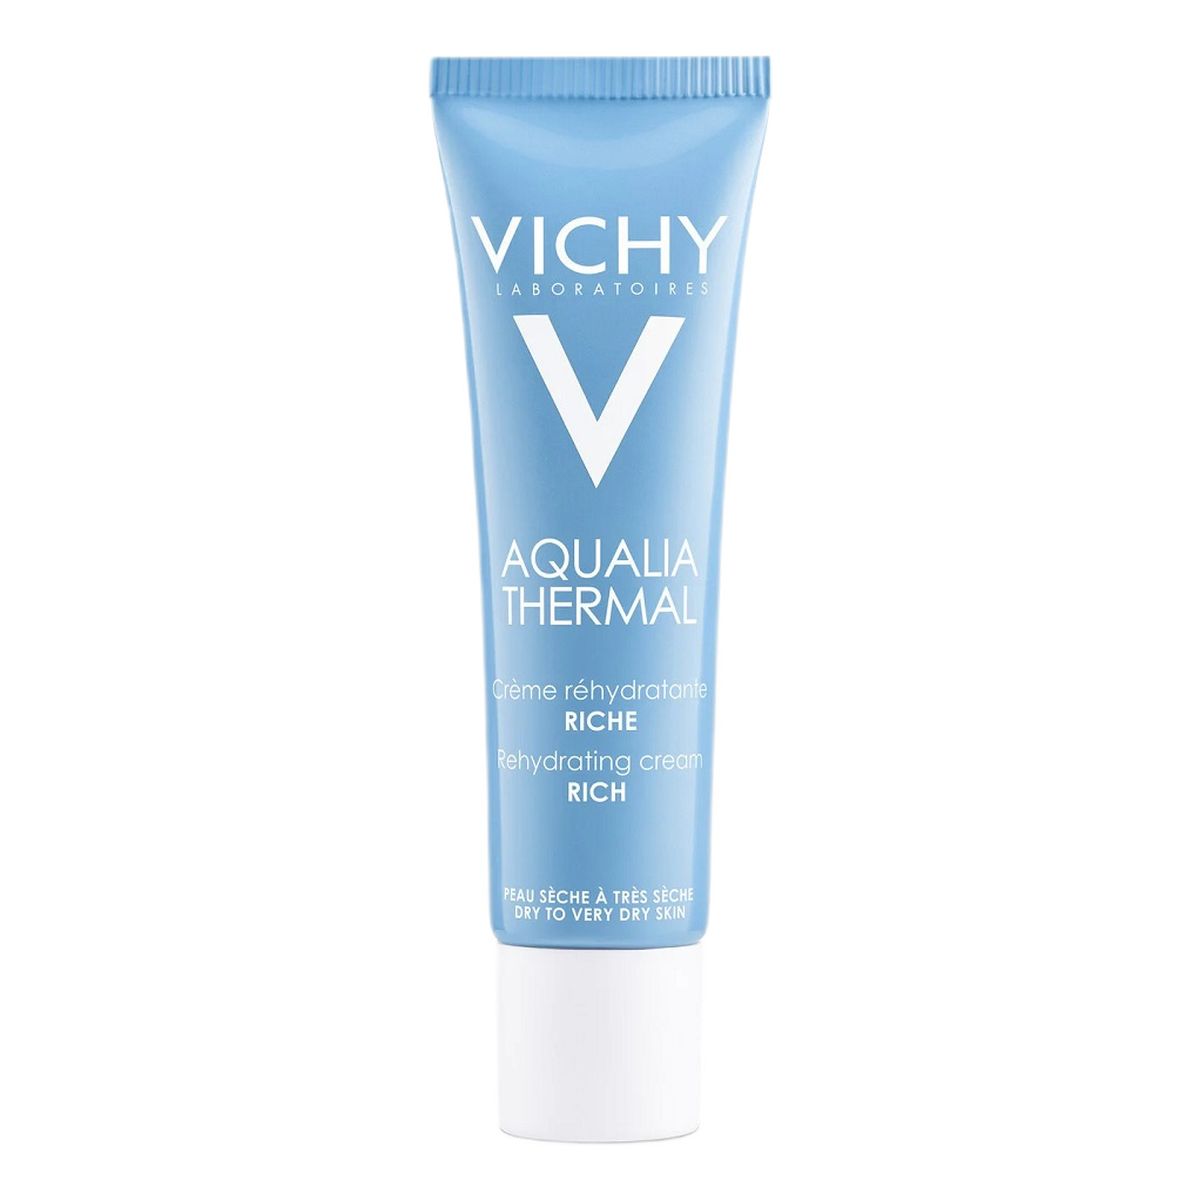 Vichy Aqualia Thermal bogaty Krem nawilżający do skóry suchej i bardzo suchej 30ml